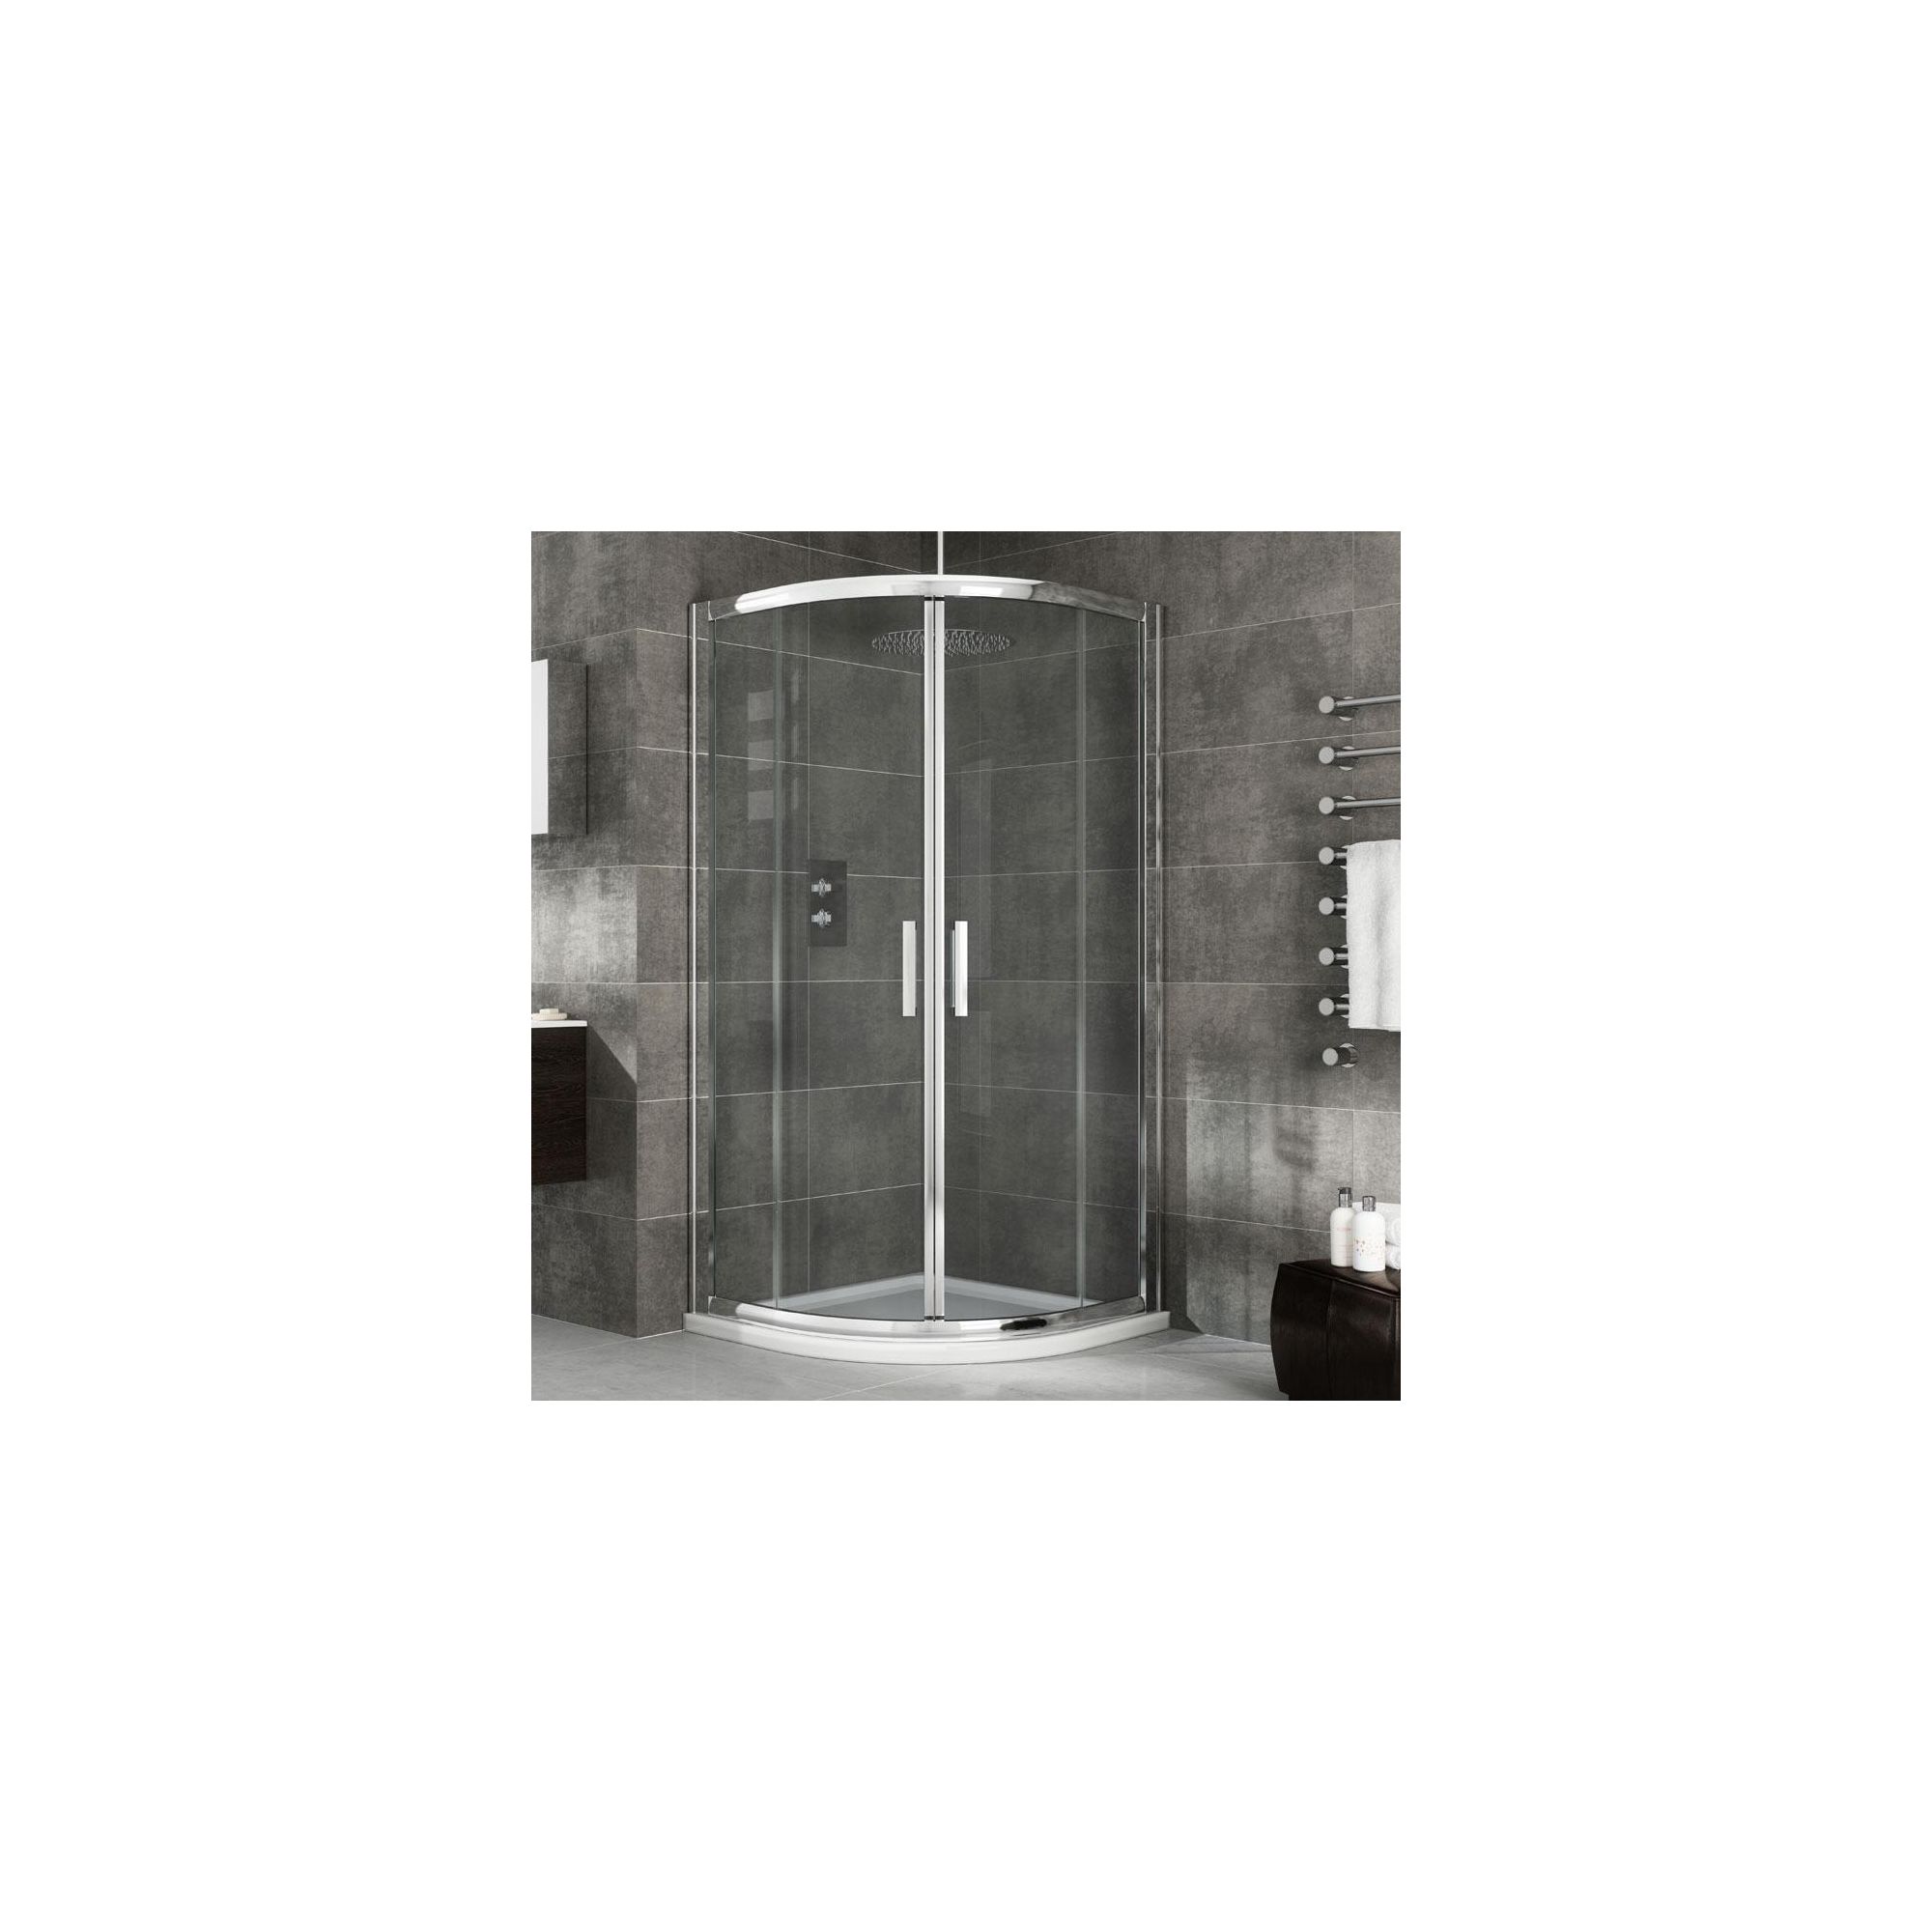 Elemis Eternity Two-Door Quadrant Shower Door, 1000mm x 1000mm, 8mm Glass at Tesco Direct